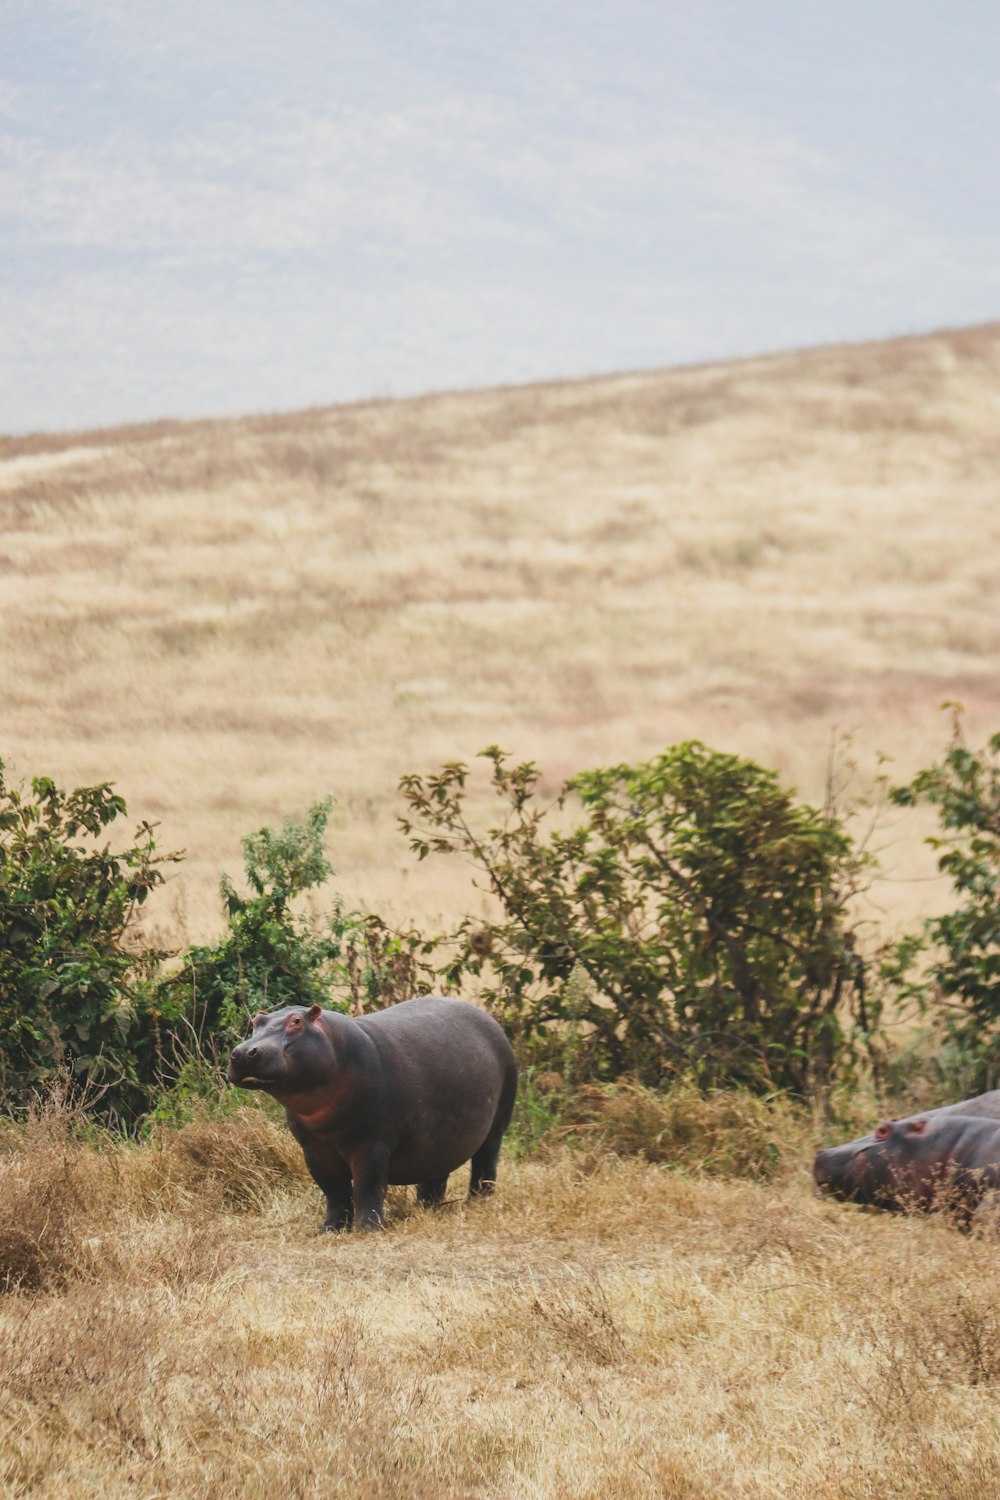 a hippopotamus standing in a dry grass field